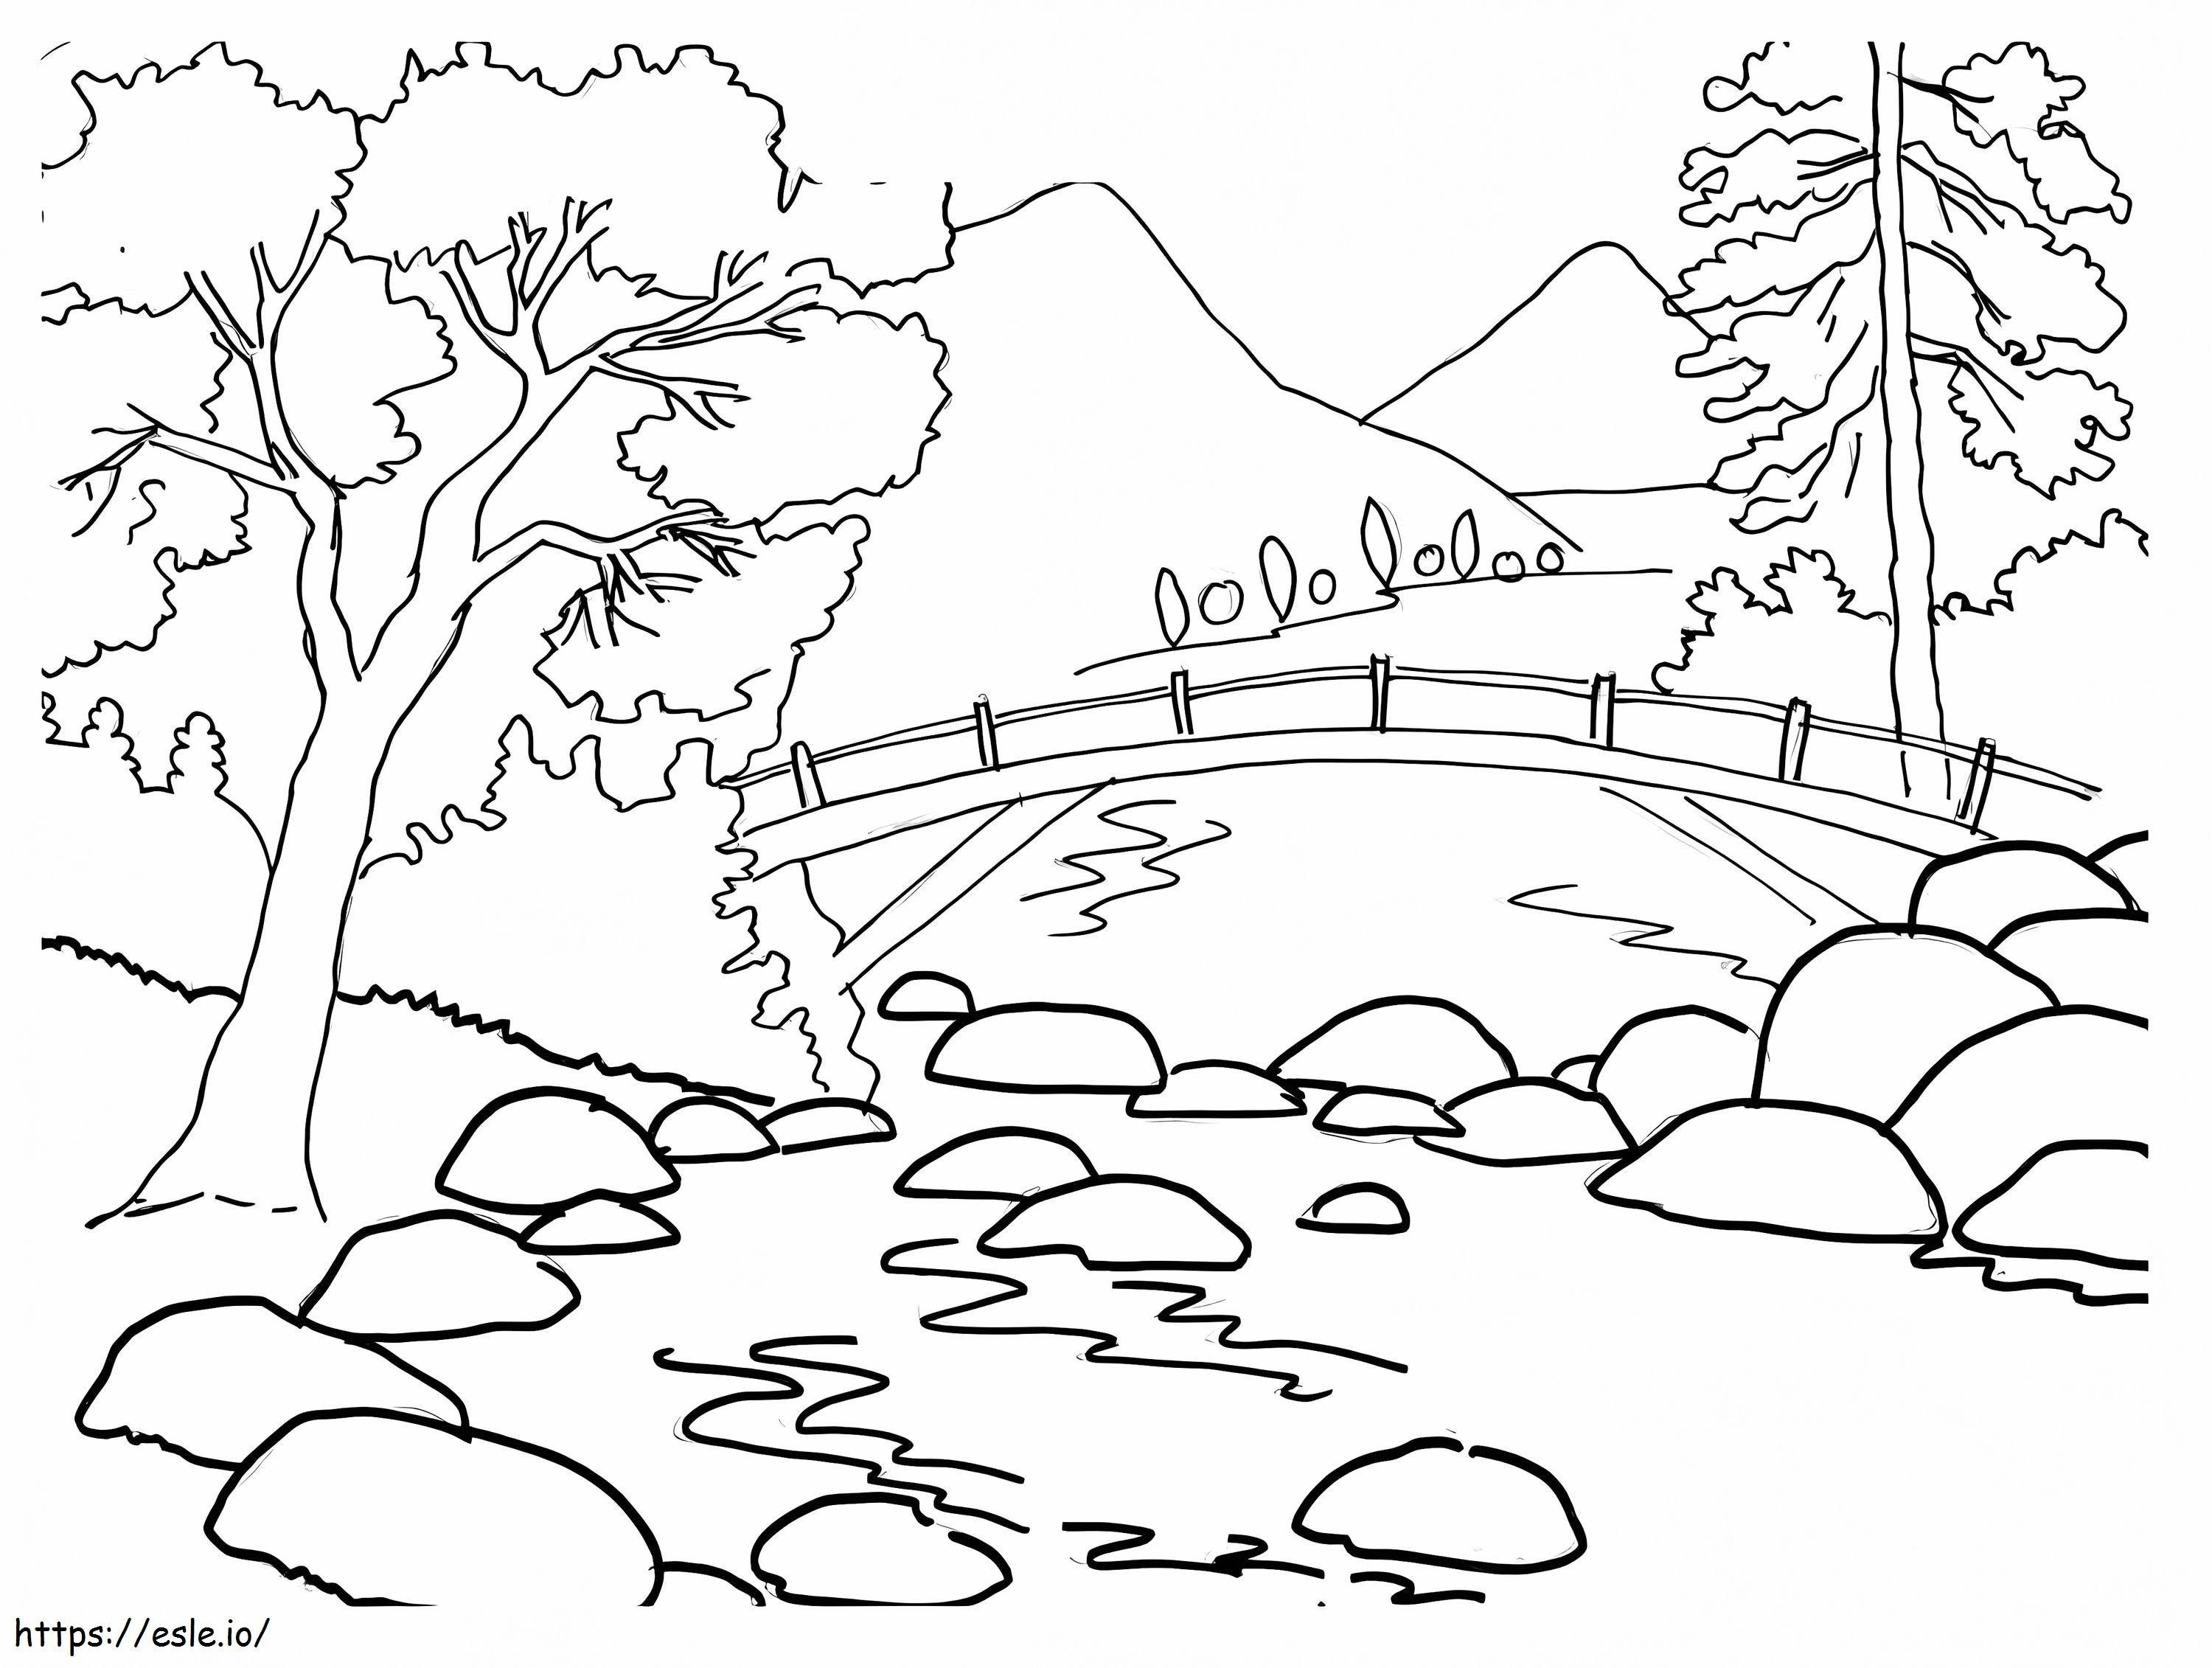 Bridge Landscape coloring page